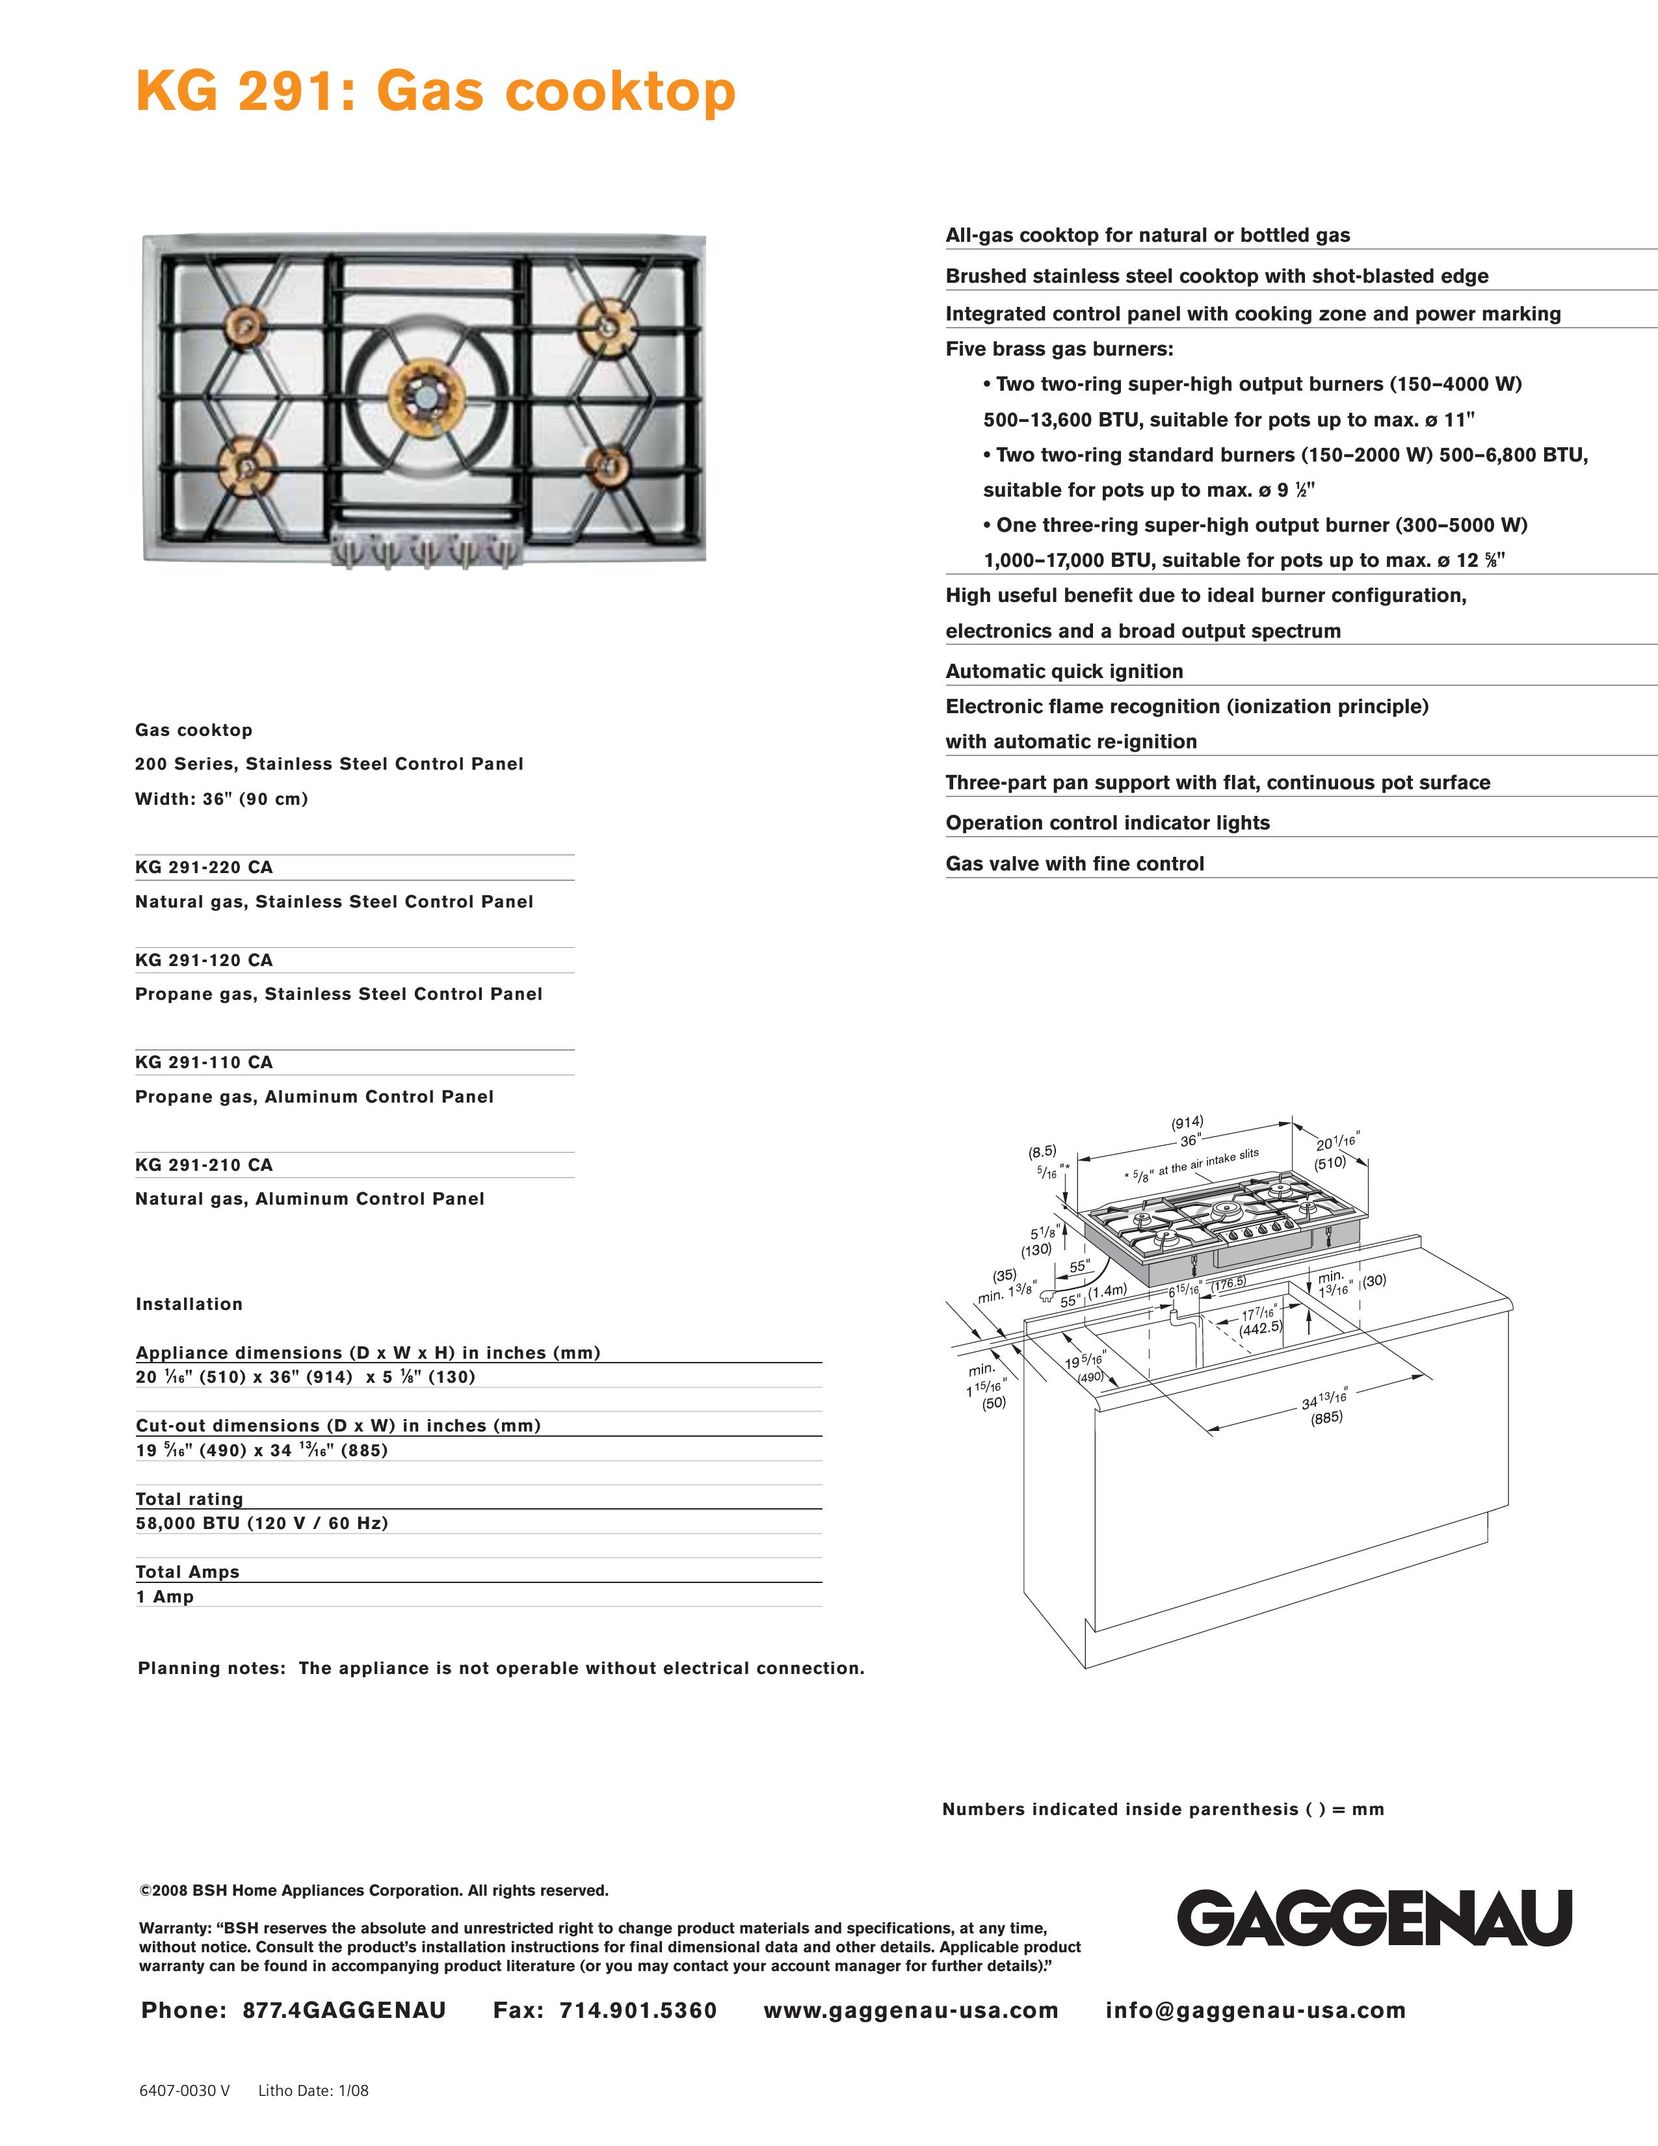 Gaggenau KG 291-210 CA Cooktop User Manual